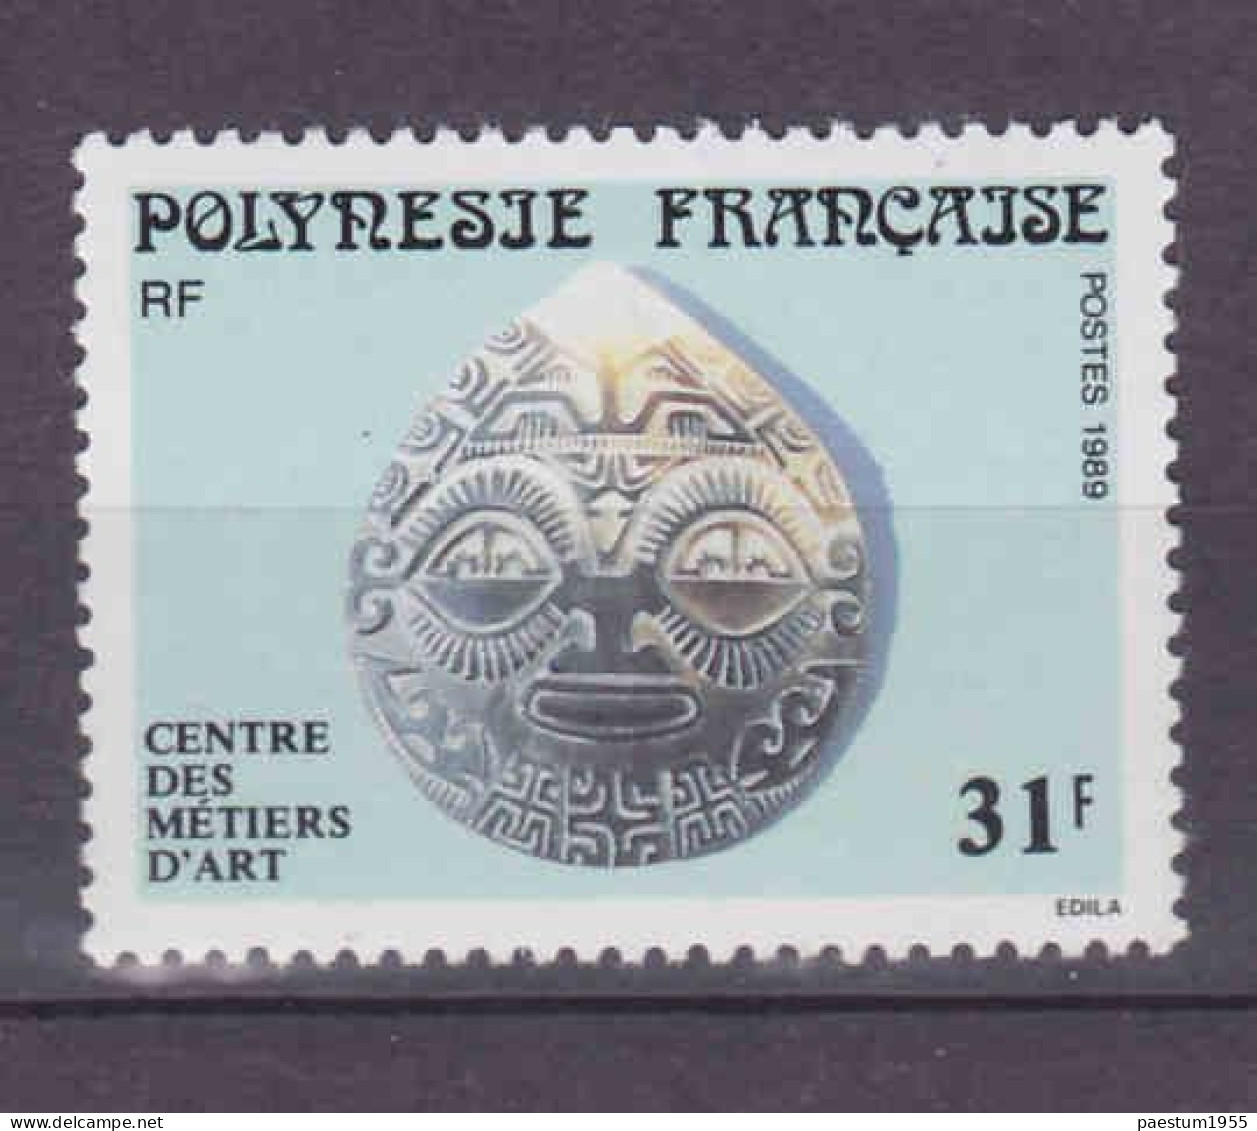 lot de 8 timbres divers neuf** MNH 1989 1990 1991 1992 1998 Polynésie Française